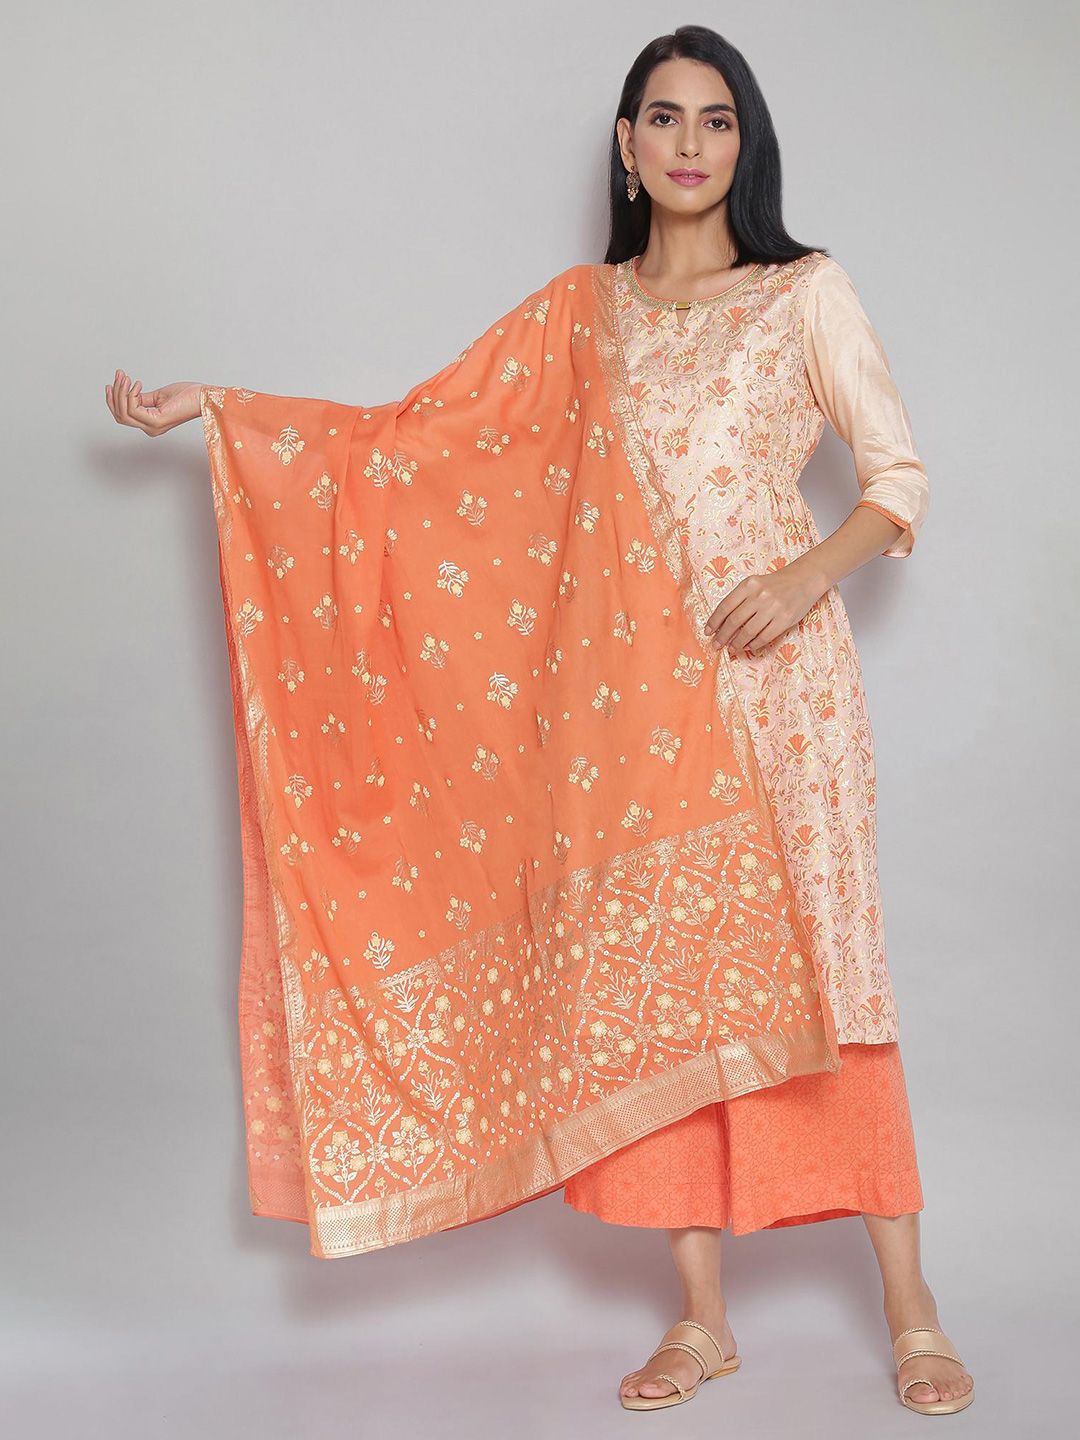 AURELIA Pink & Orange Printed Dupatta Price in India